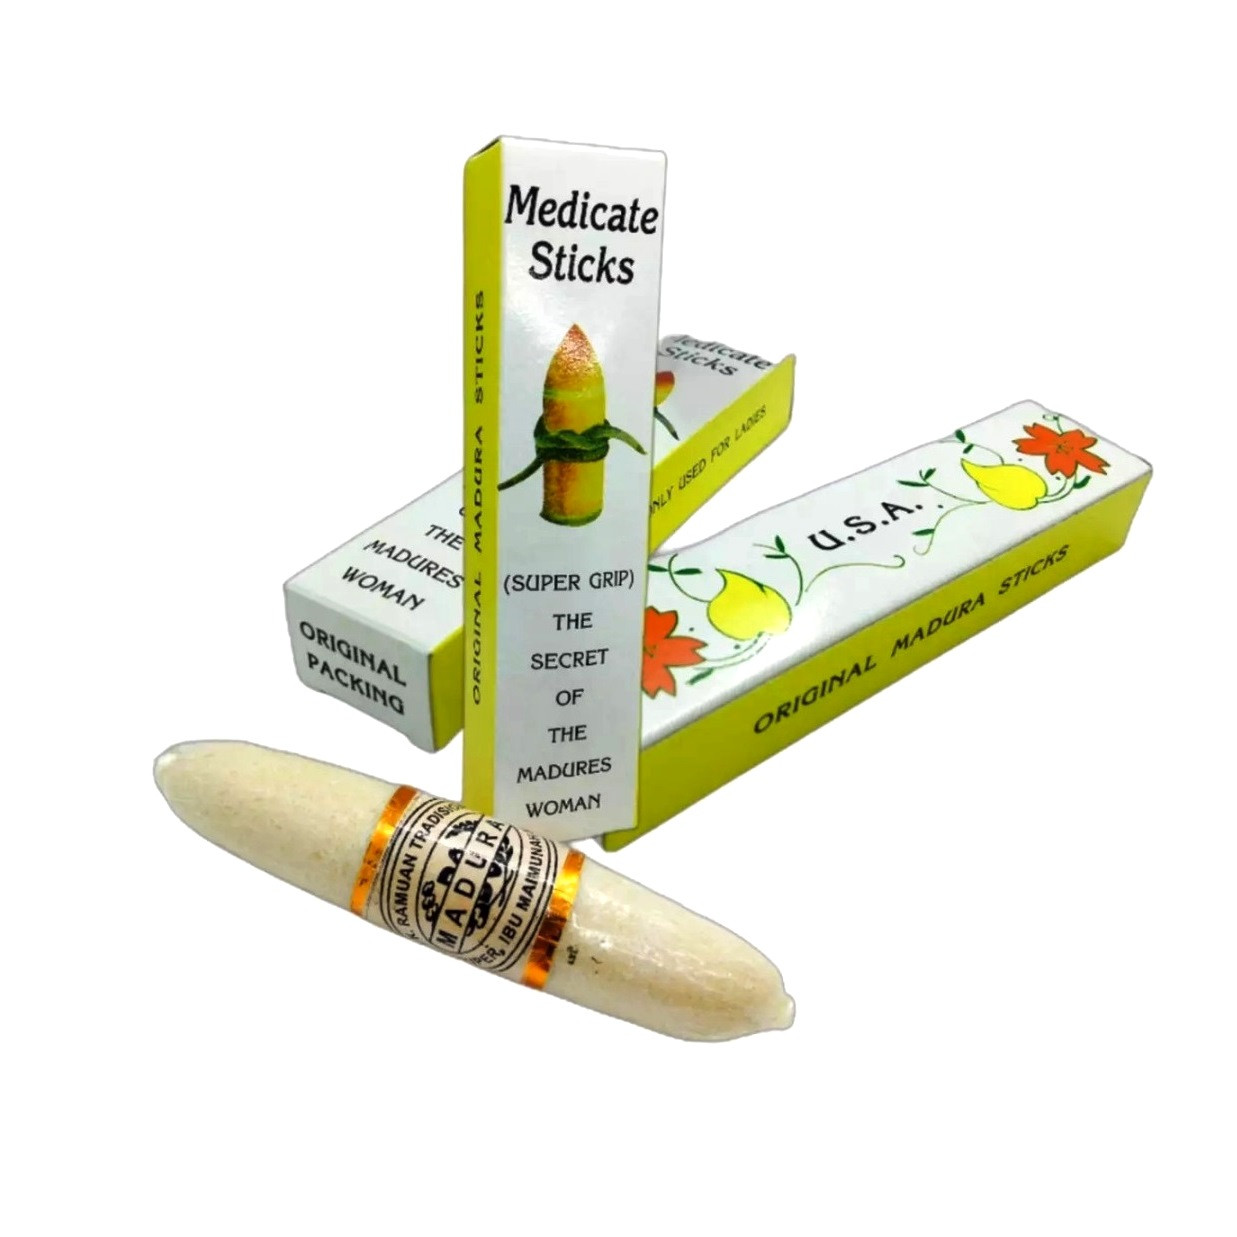 Палочка вагинальная для сокращения мышц влагалища Мадура Medicate Sticks Super Grip, ( Оригинал ) производство